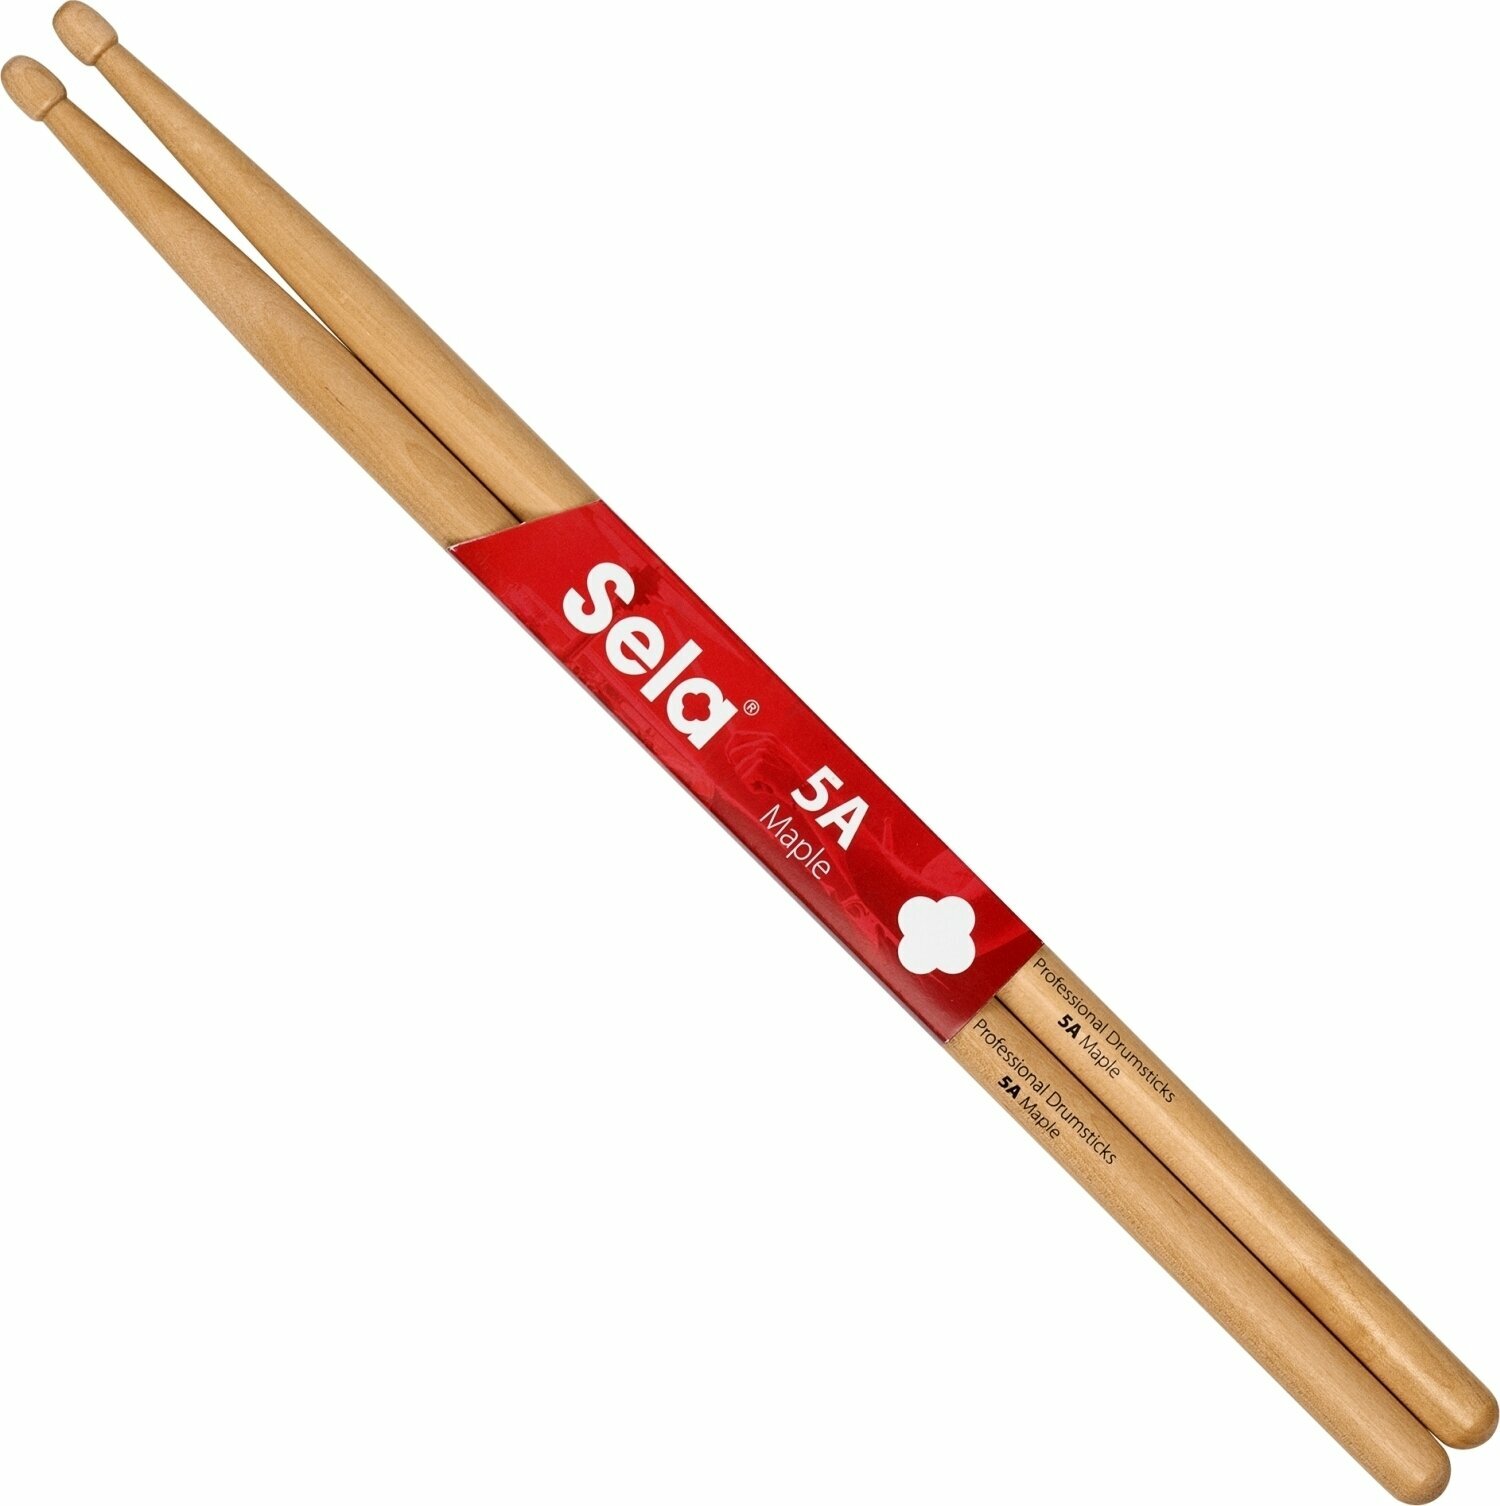 Drumsticks Sela SE 271 Professional Drumsticks 5A - 6 Pair Drumsticks